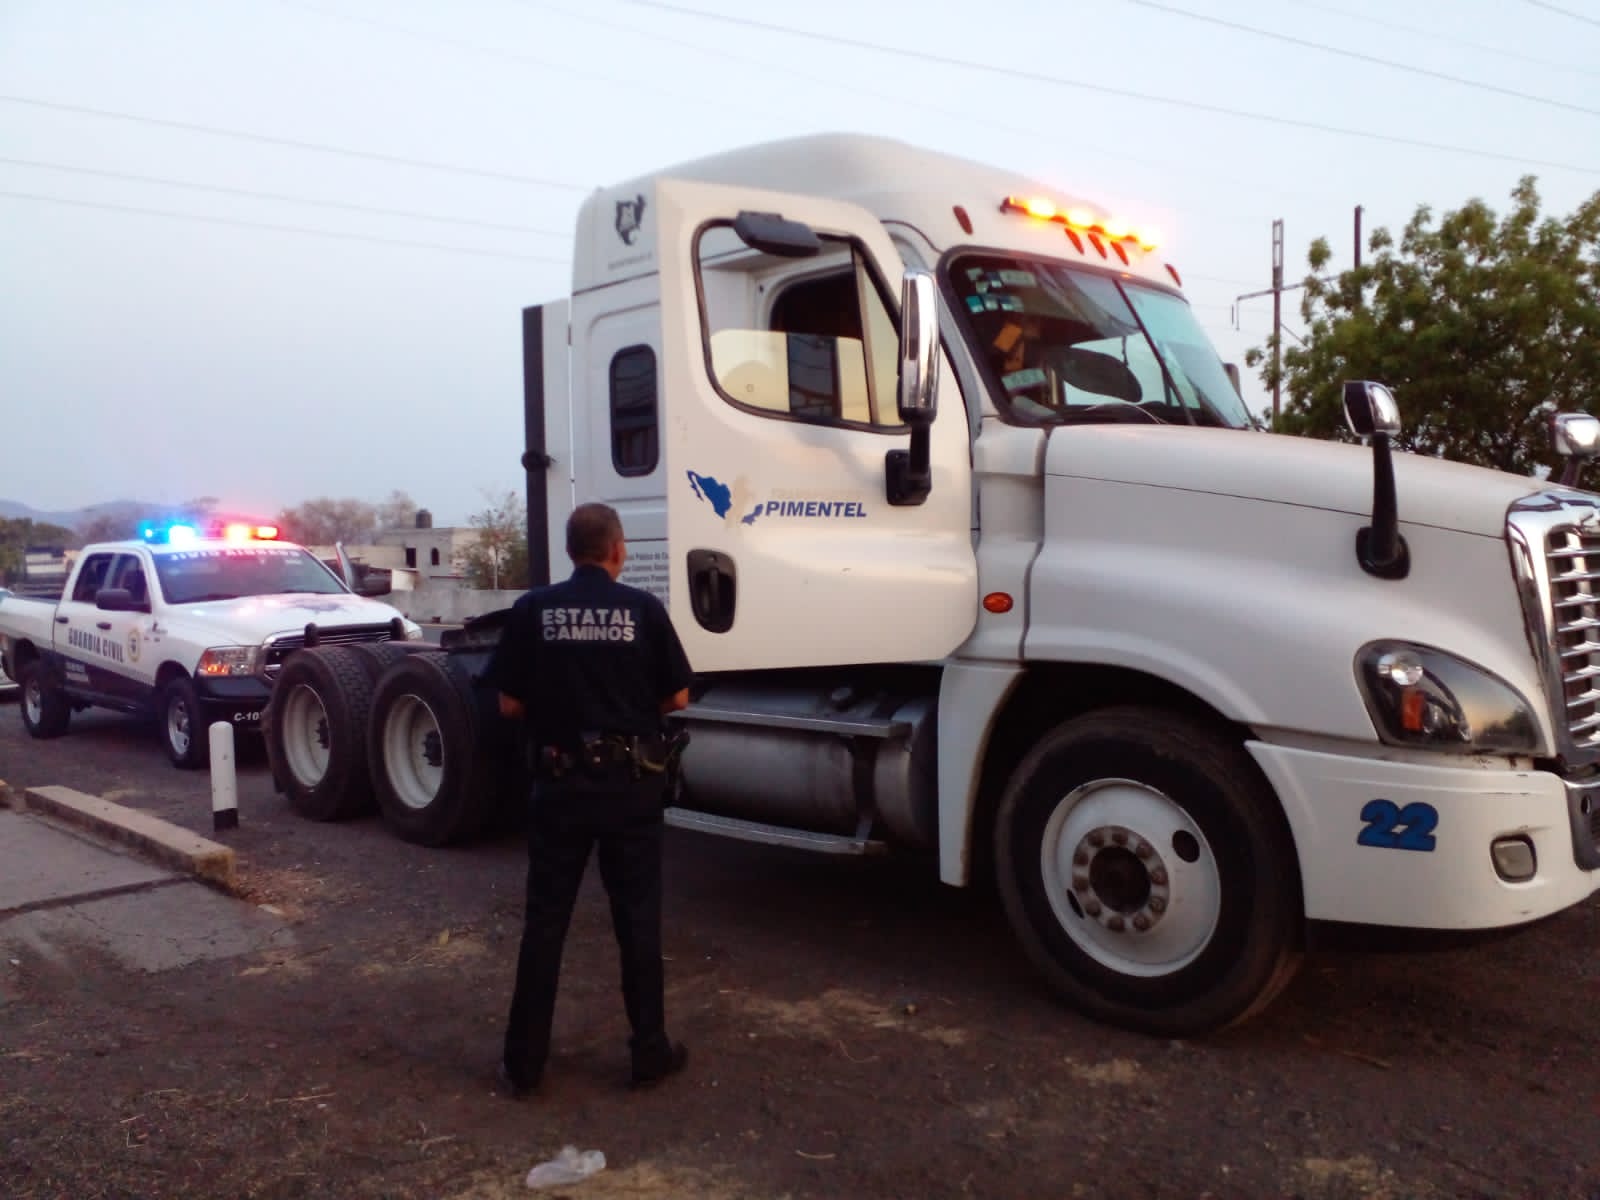 Personal de la Guardia Civil de la División de Agrupamiento Caminos, localizaron un tracto camión robado